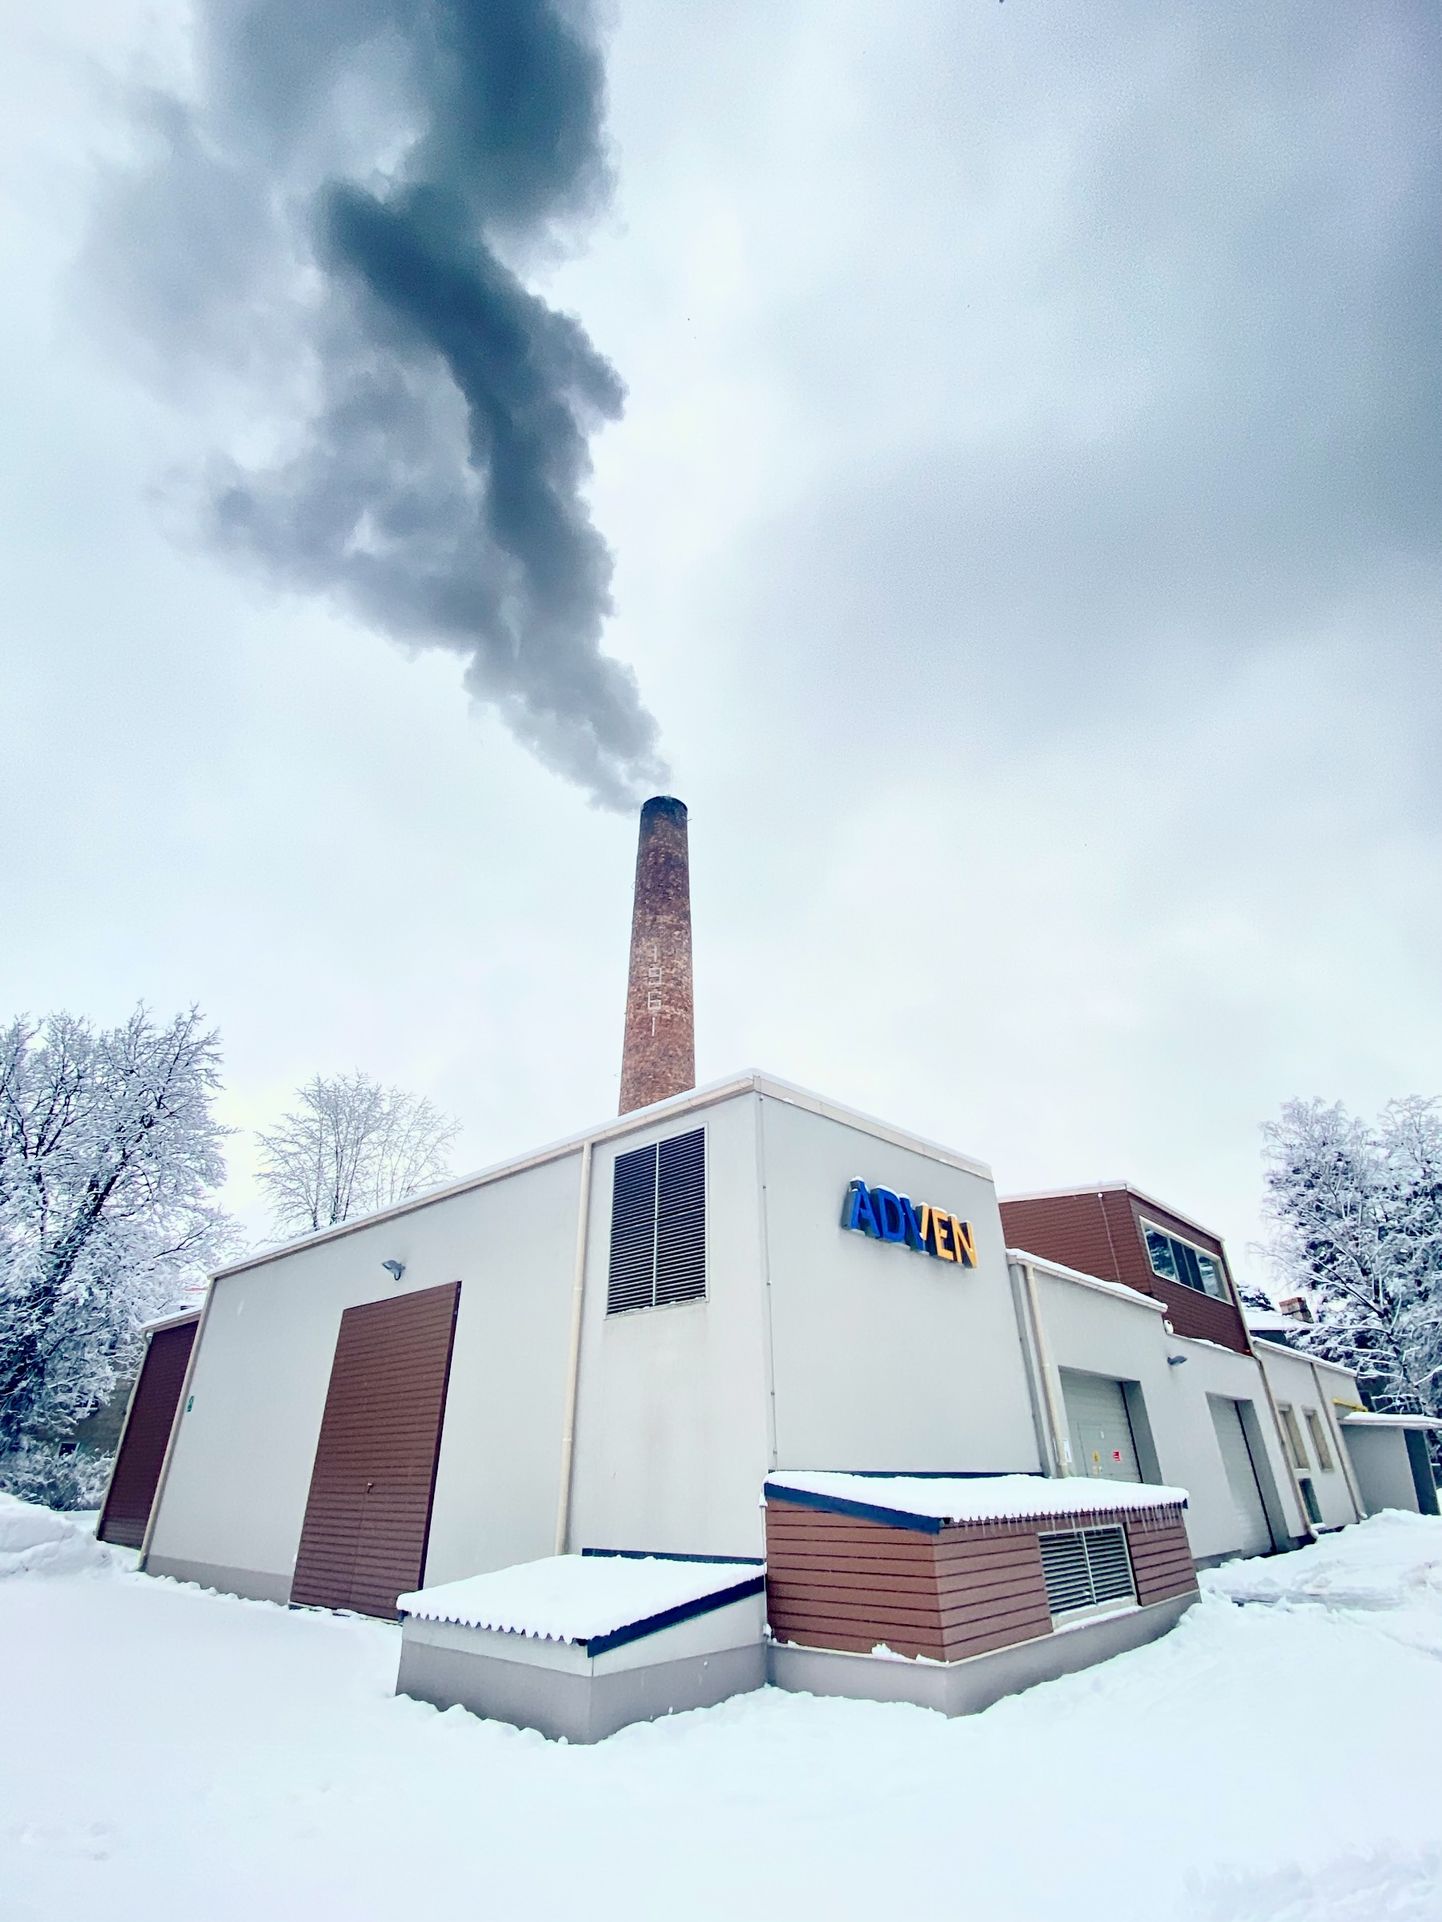 Дымящая котельная "Adven Eesti" в Нарва-Йыэсуу в холодный зимний день.